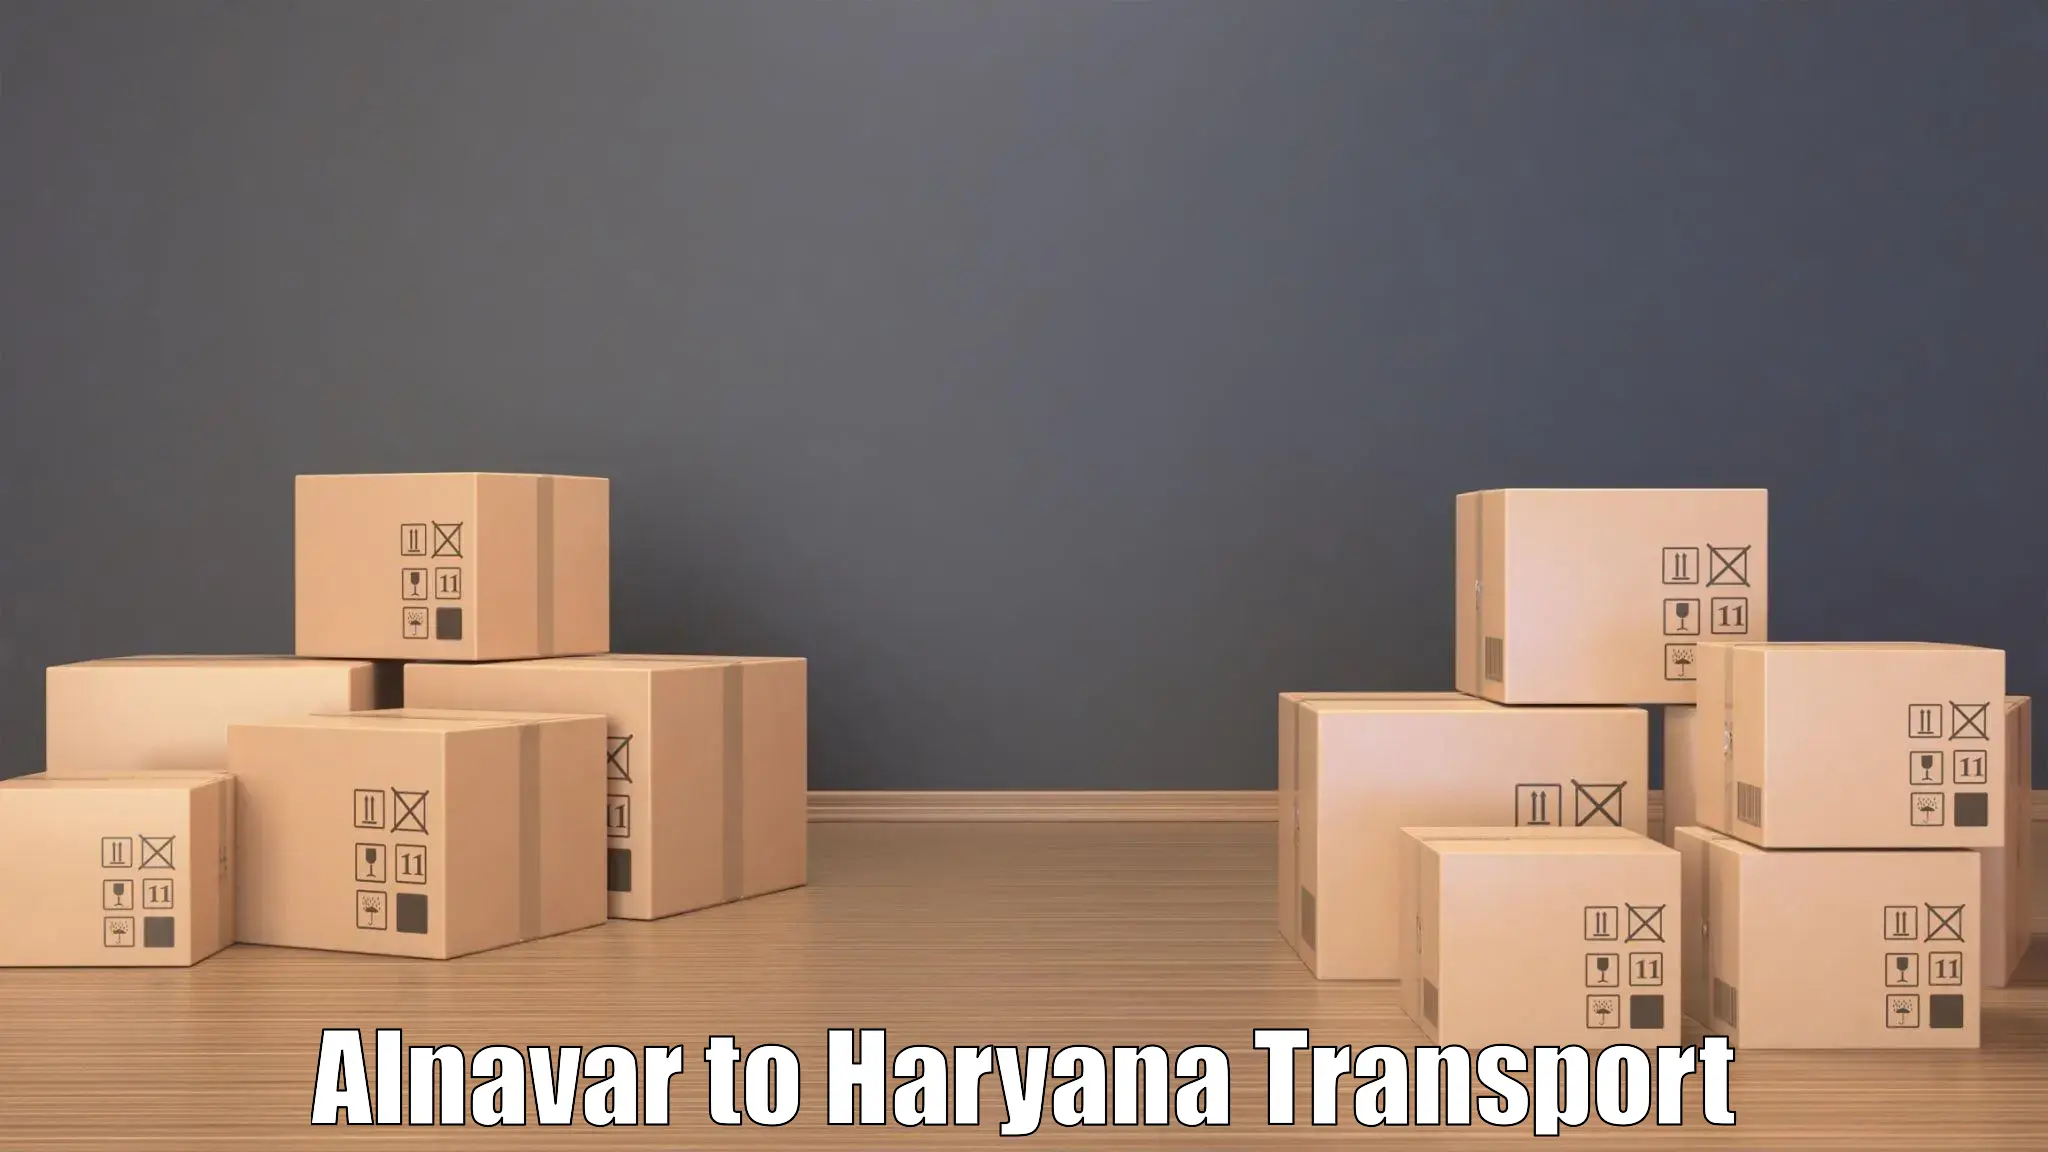 Nearby transport service Alnavar to Hansi